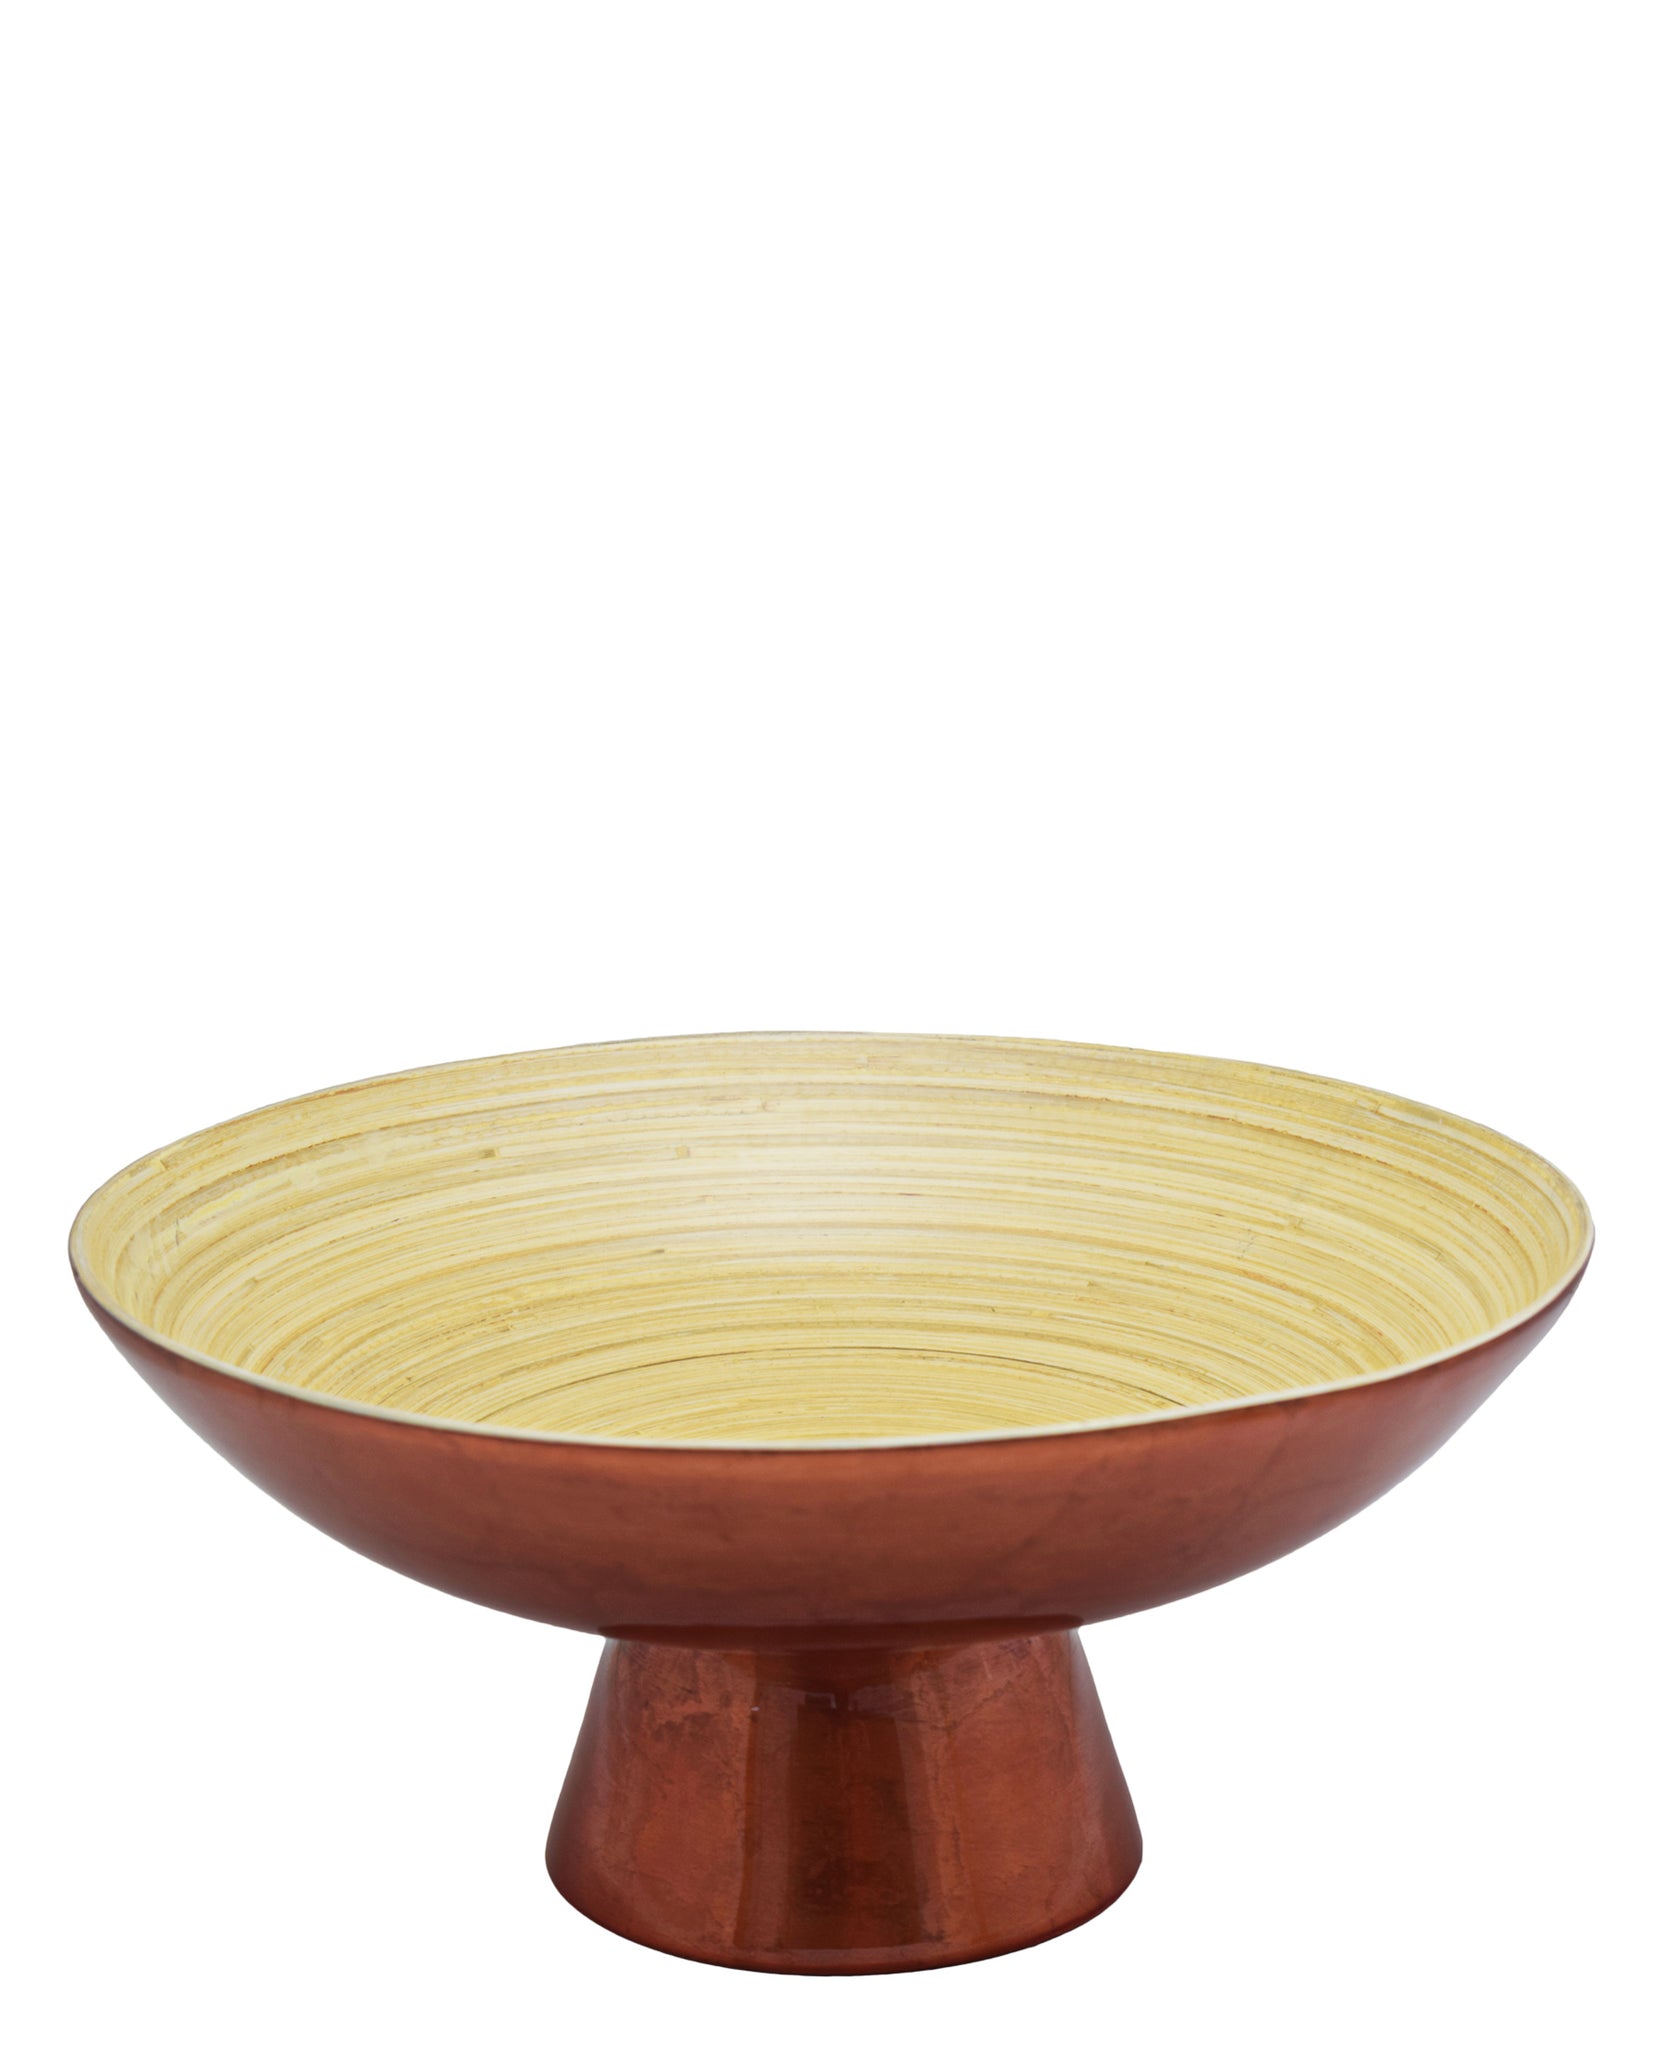 Bamboo Pedestal Bowl Large - Brown